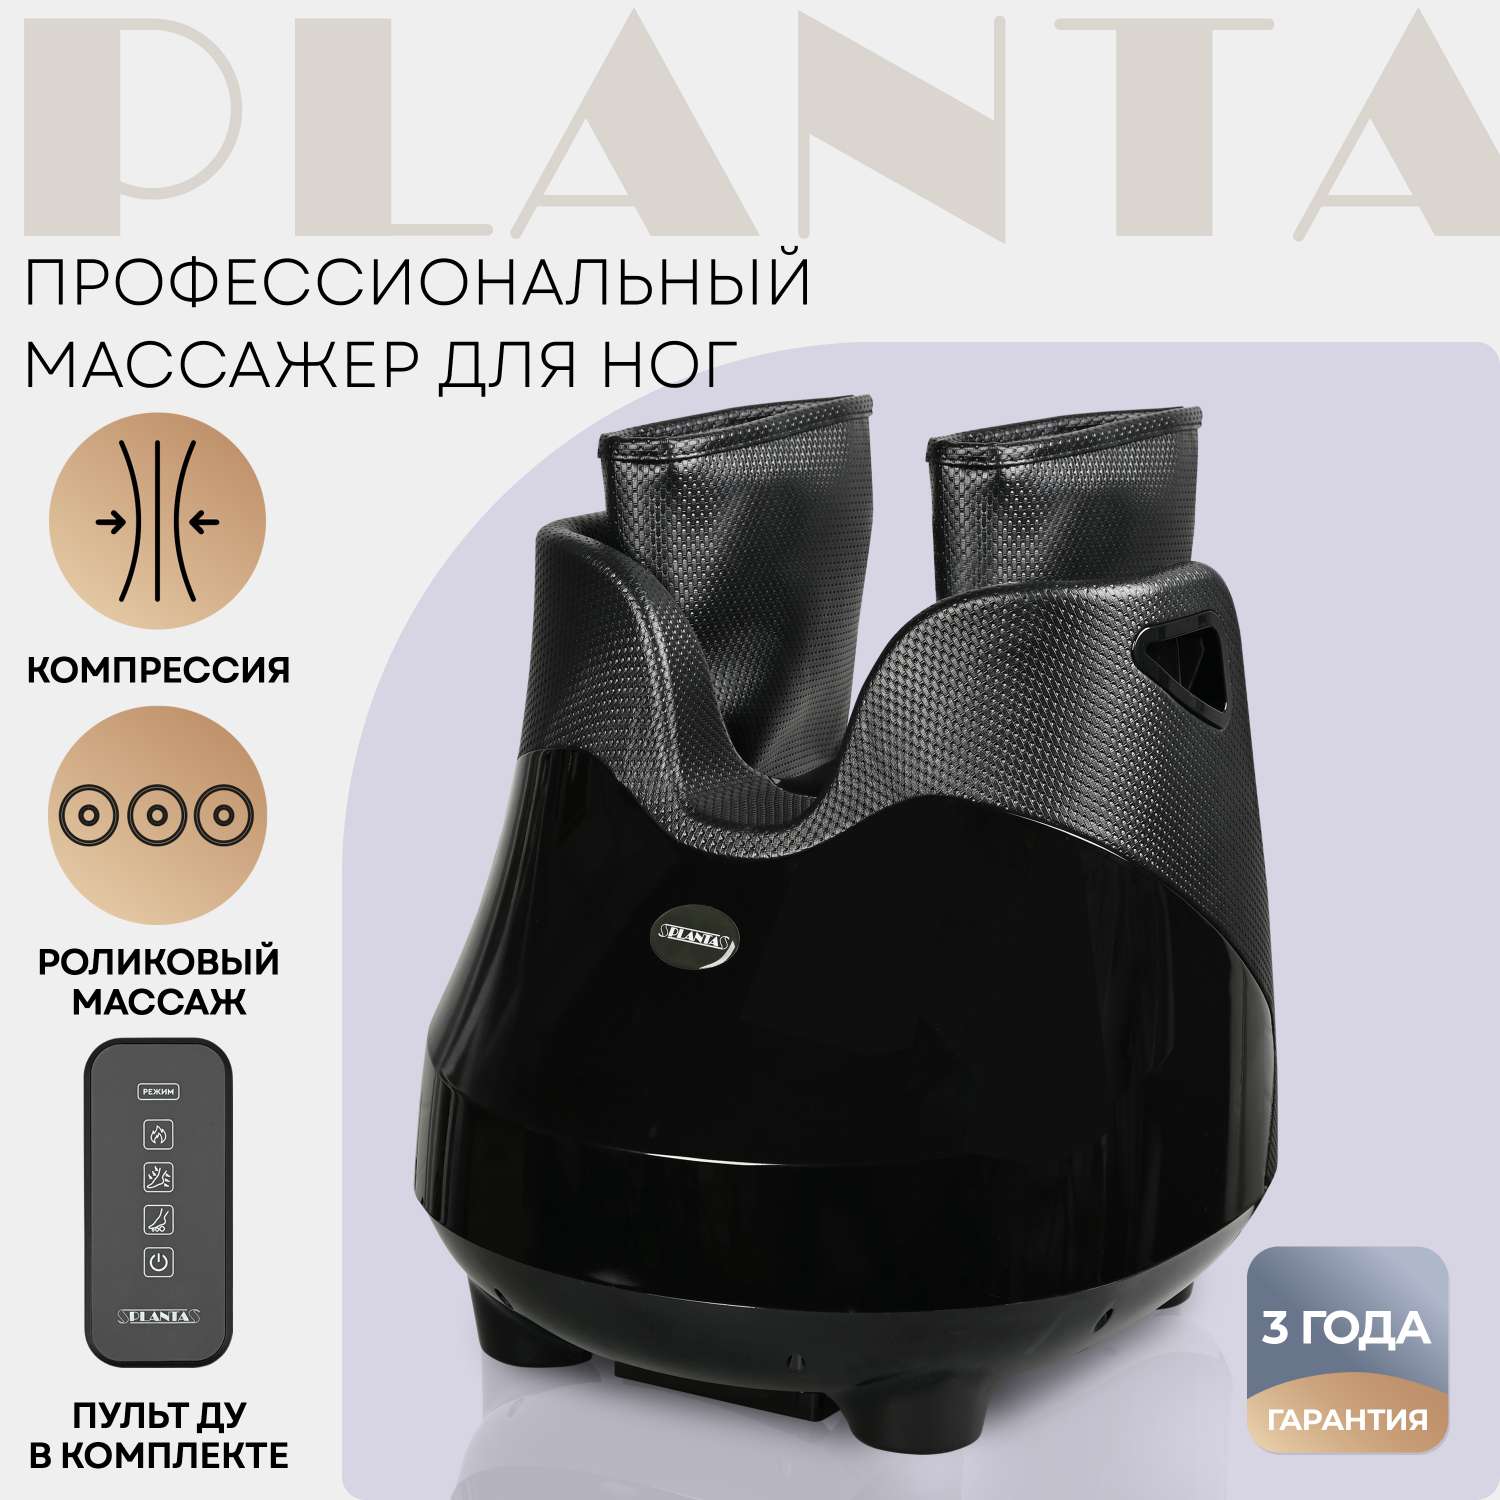 Массажер для ног Planta с подогревом MF-30 роликовый и компрессионный массаж стоп лодыжек икр - фото 1